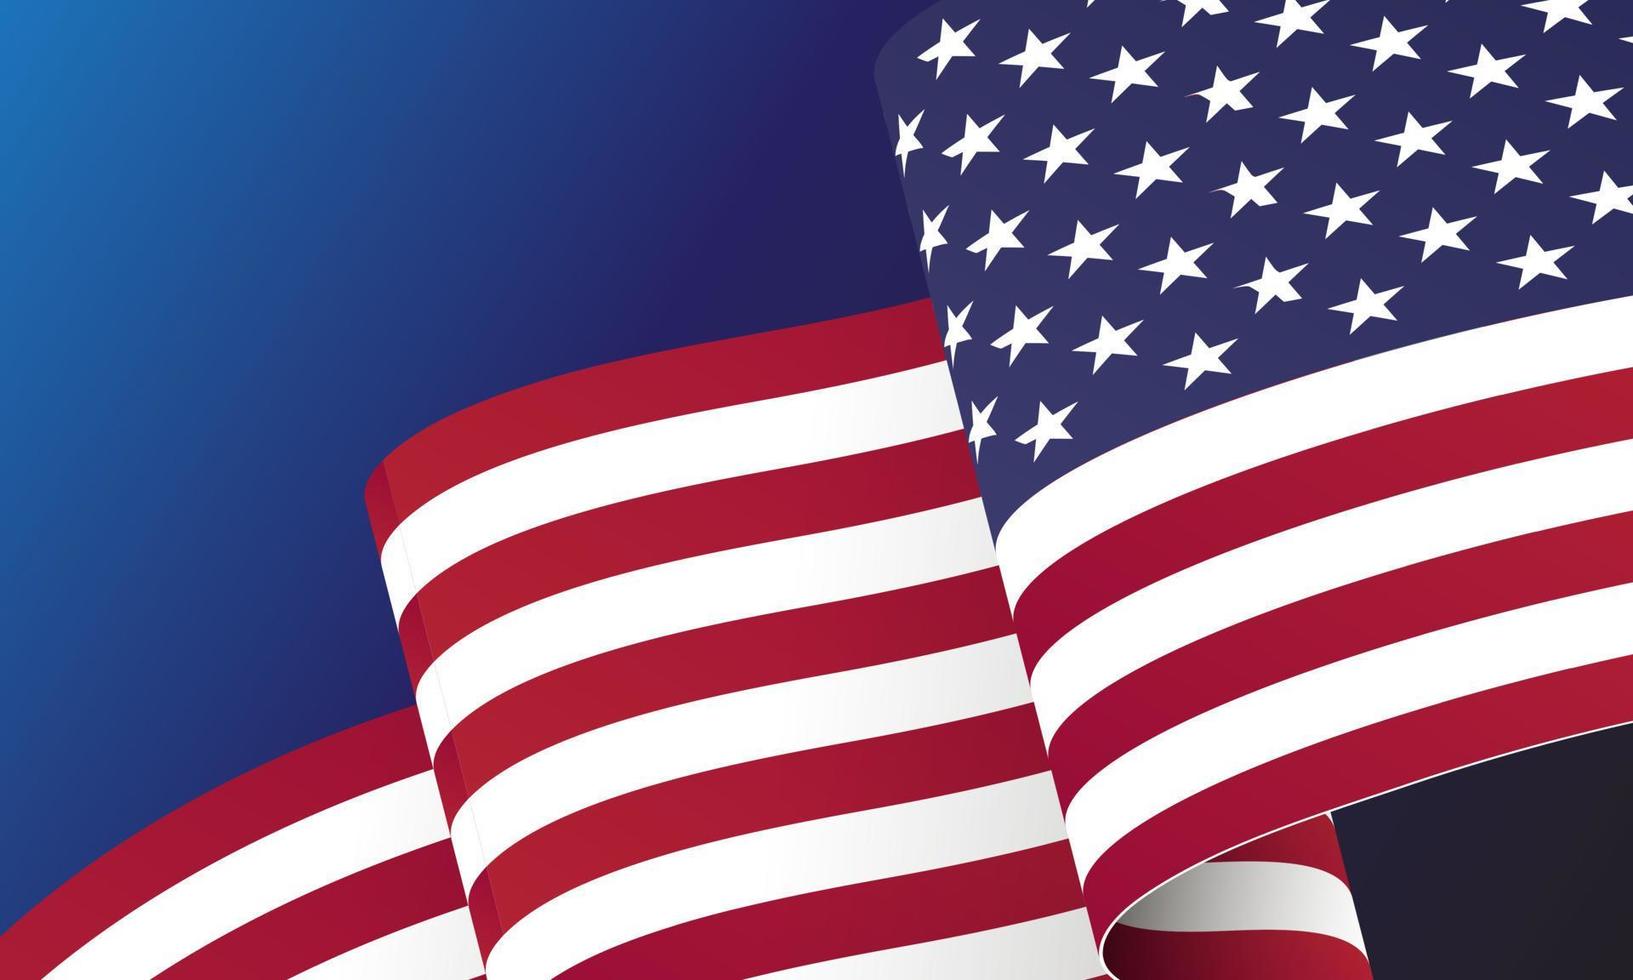 ondeando la bandera de los estados unidos. ilustración de la bandera americana ondulada para el día de la independencia. bandera americana en la ilustración de vector de fondo transparente. nosotros, estados unidos, pancarta.